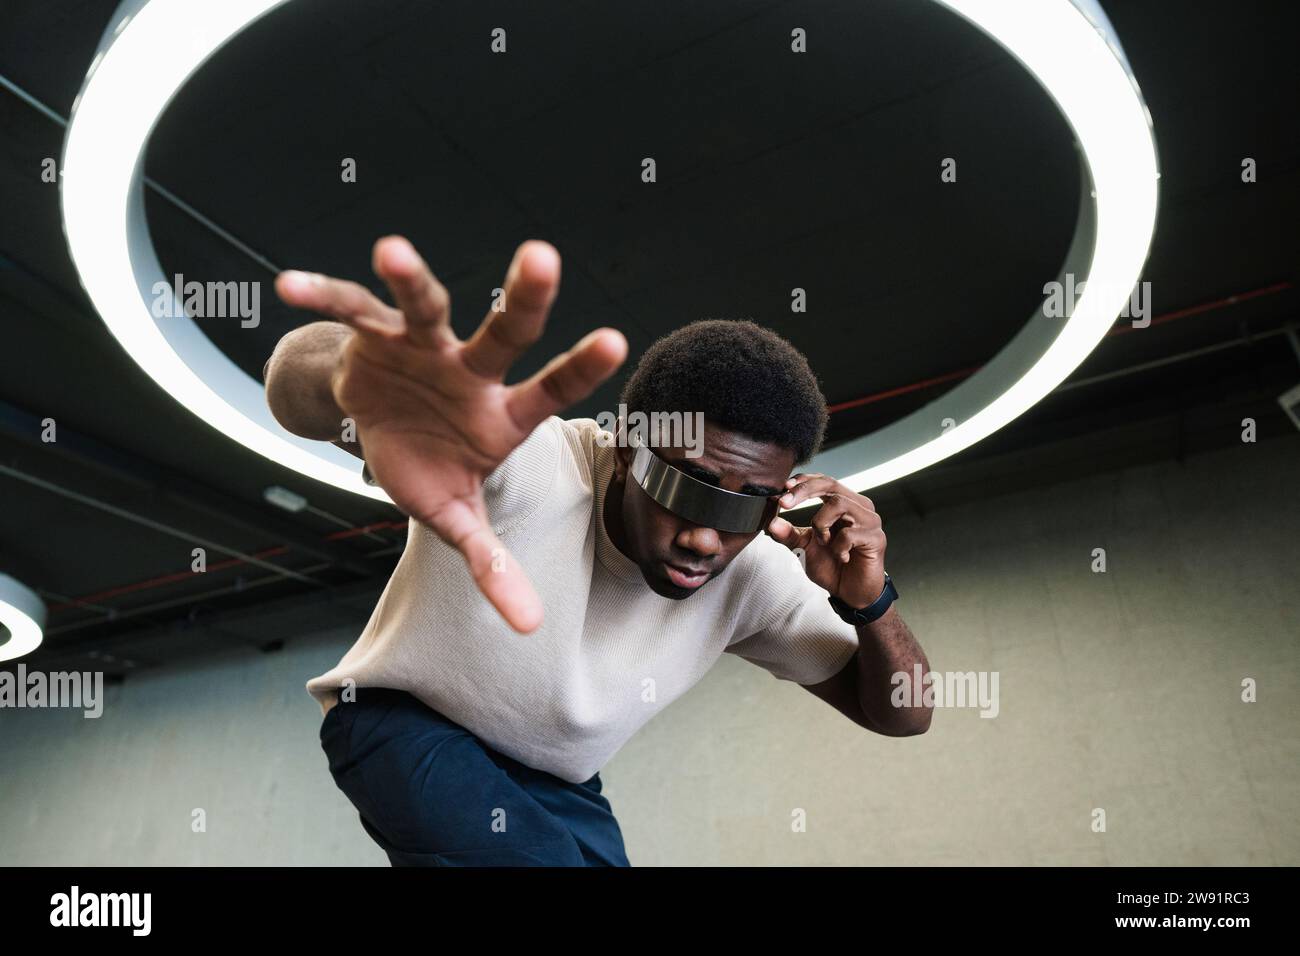 Jeune homme avec un regard futuriste à travers les cyber-lunettes sous la lampe annulaire moderne atteignant la main Banque D'Images